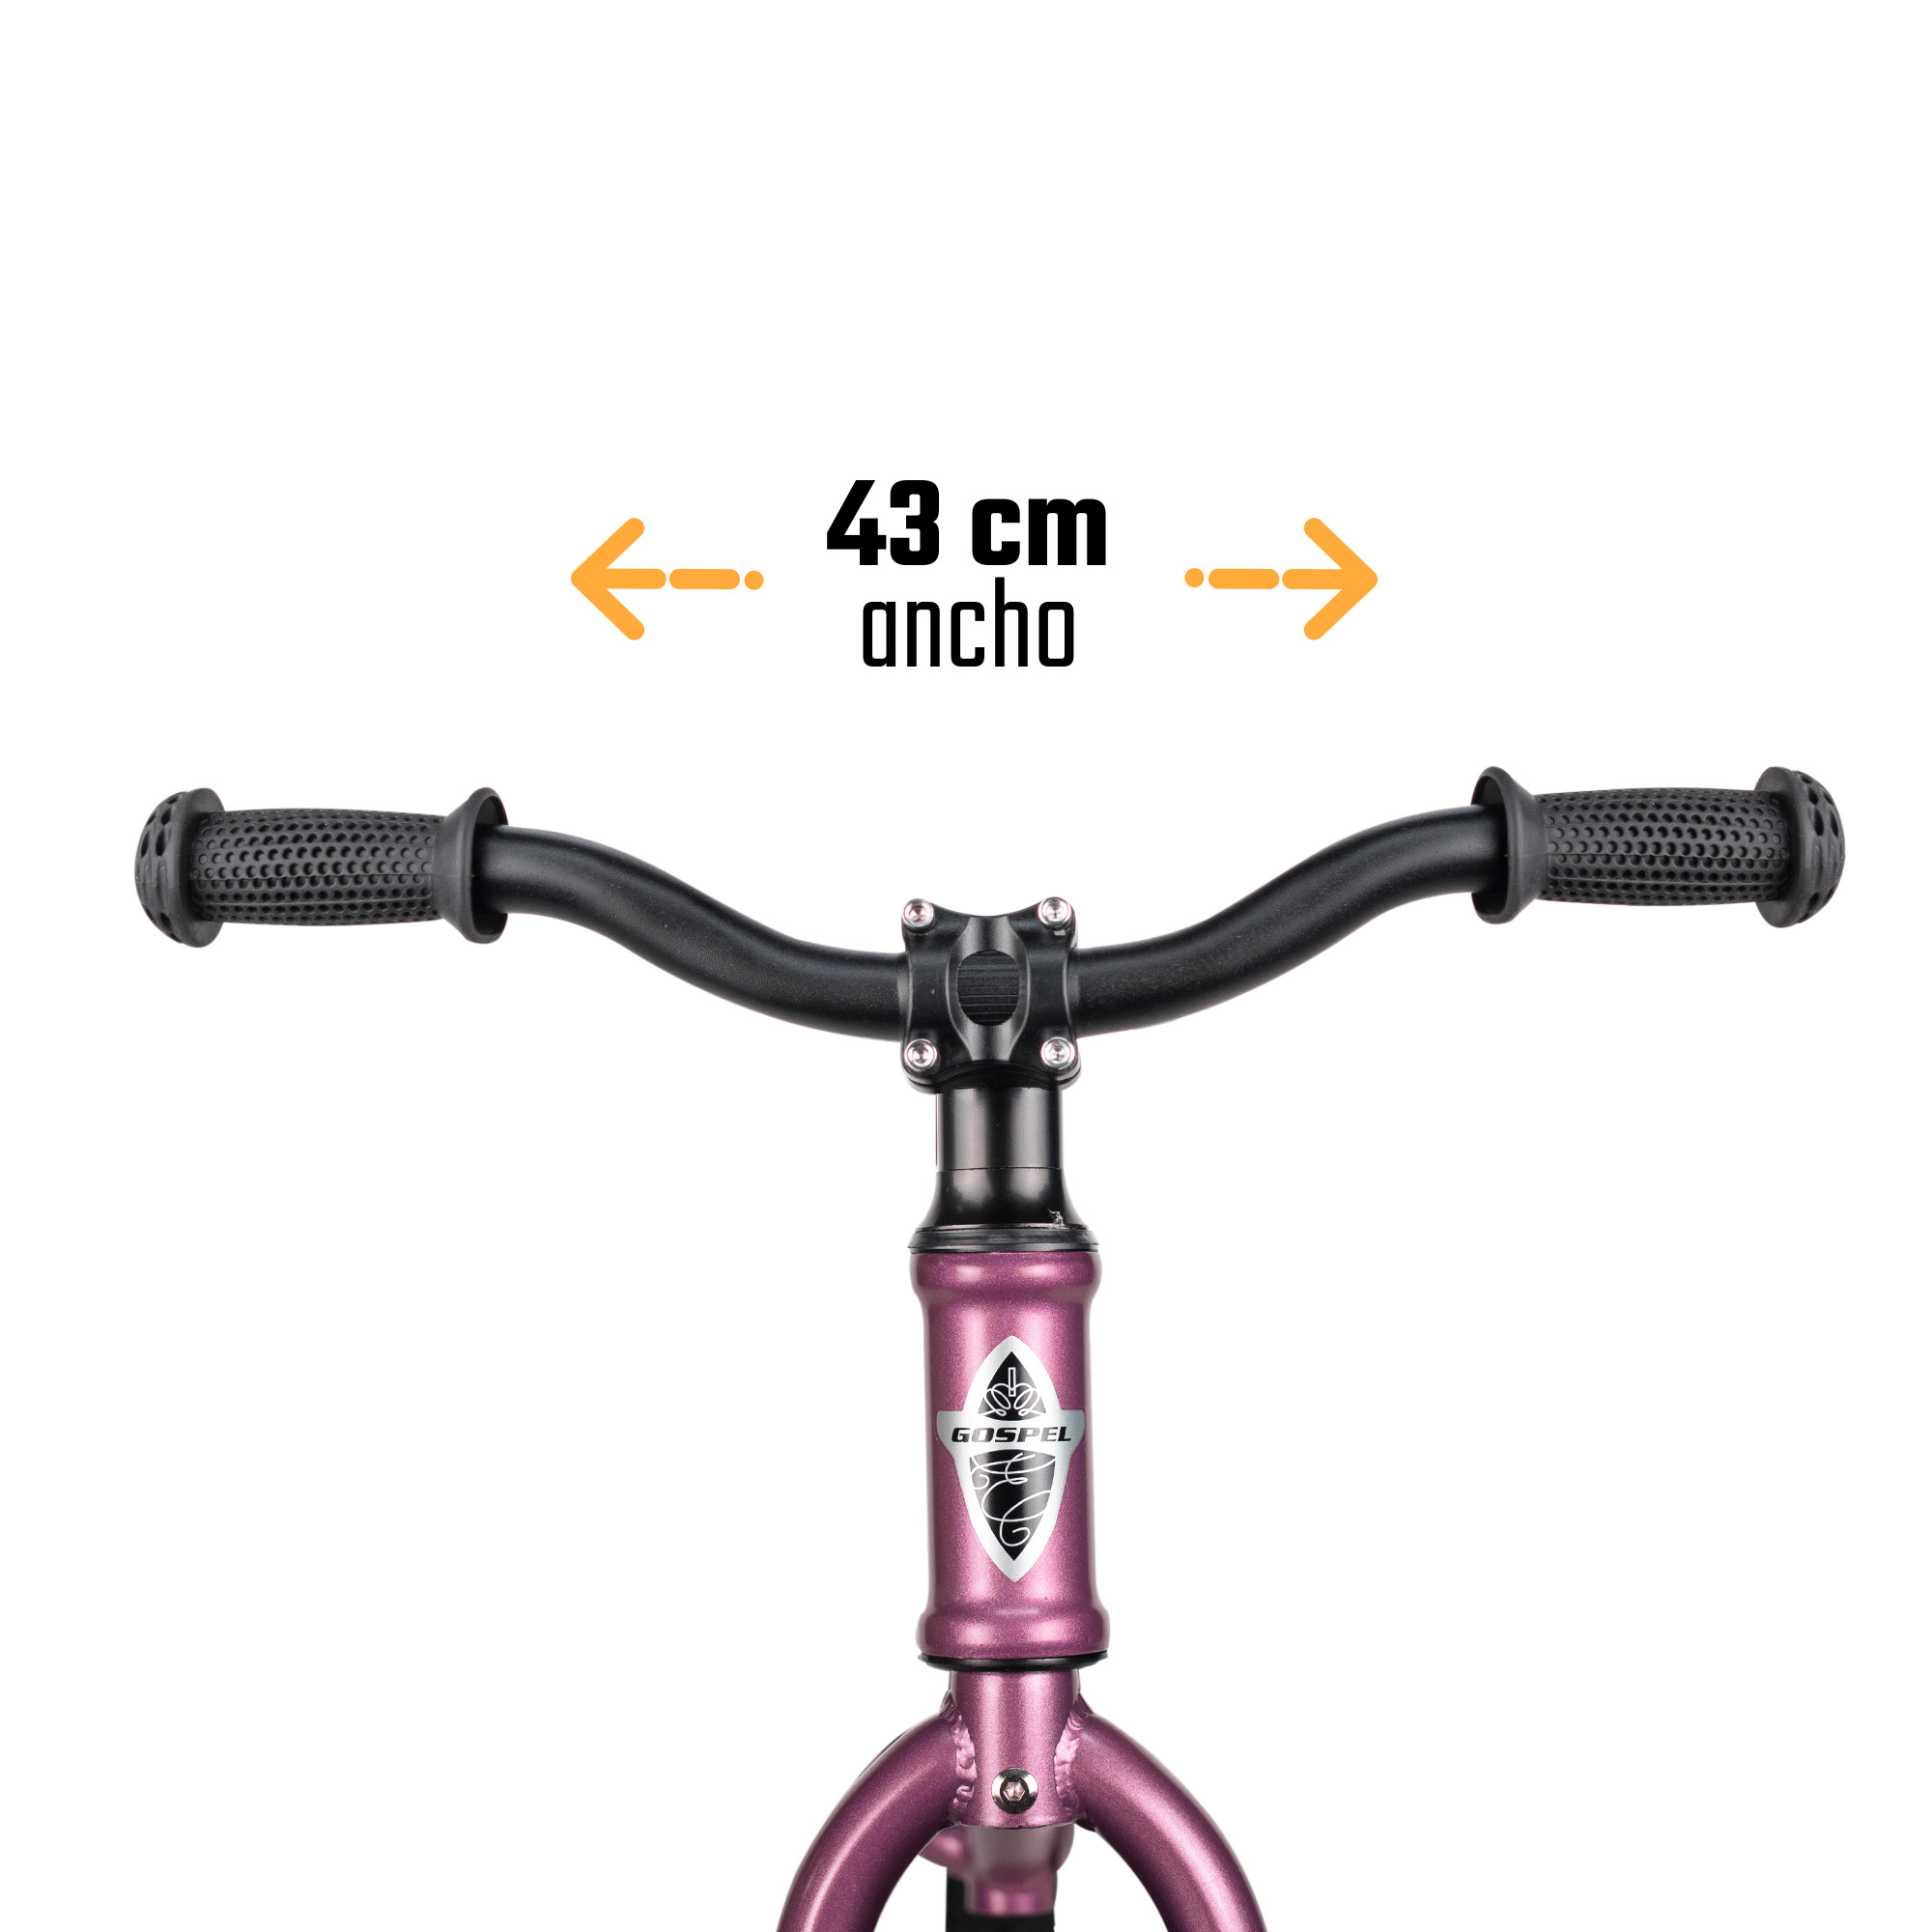 Ciclometa Detalles Bicicleta R 12 Infantil para Niña Nice Girl 1 Velocidad  Gosa